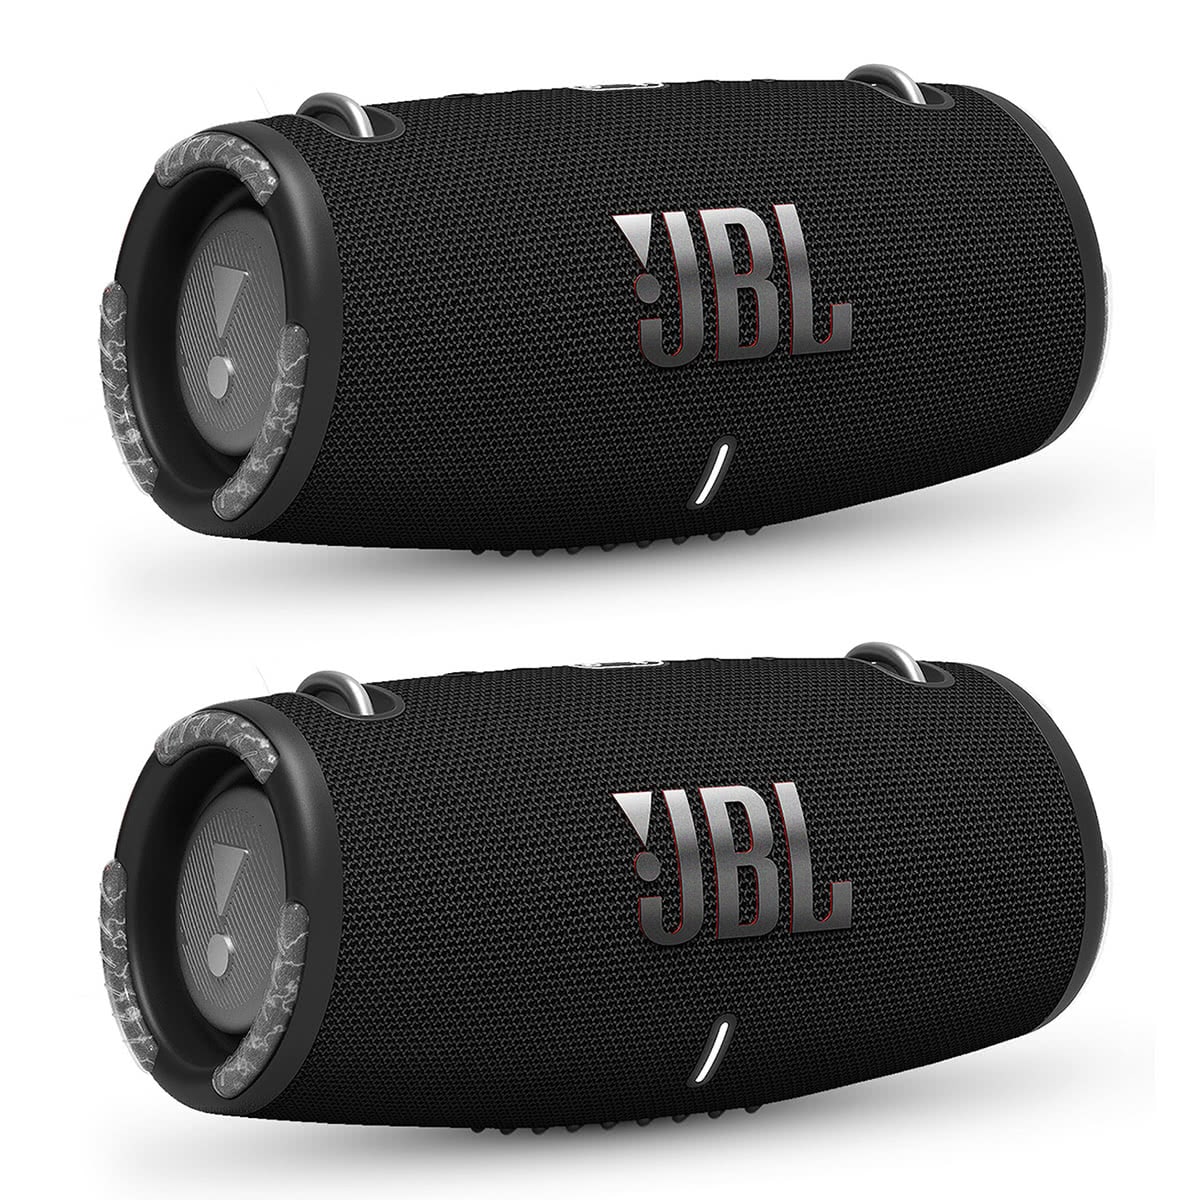 JBL Xtreme 3 Portable Bluetooth Waterproof Speakers - Pair (Black) - image 1 of 3